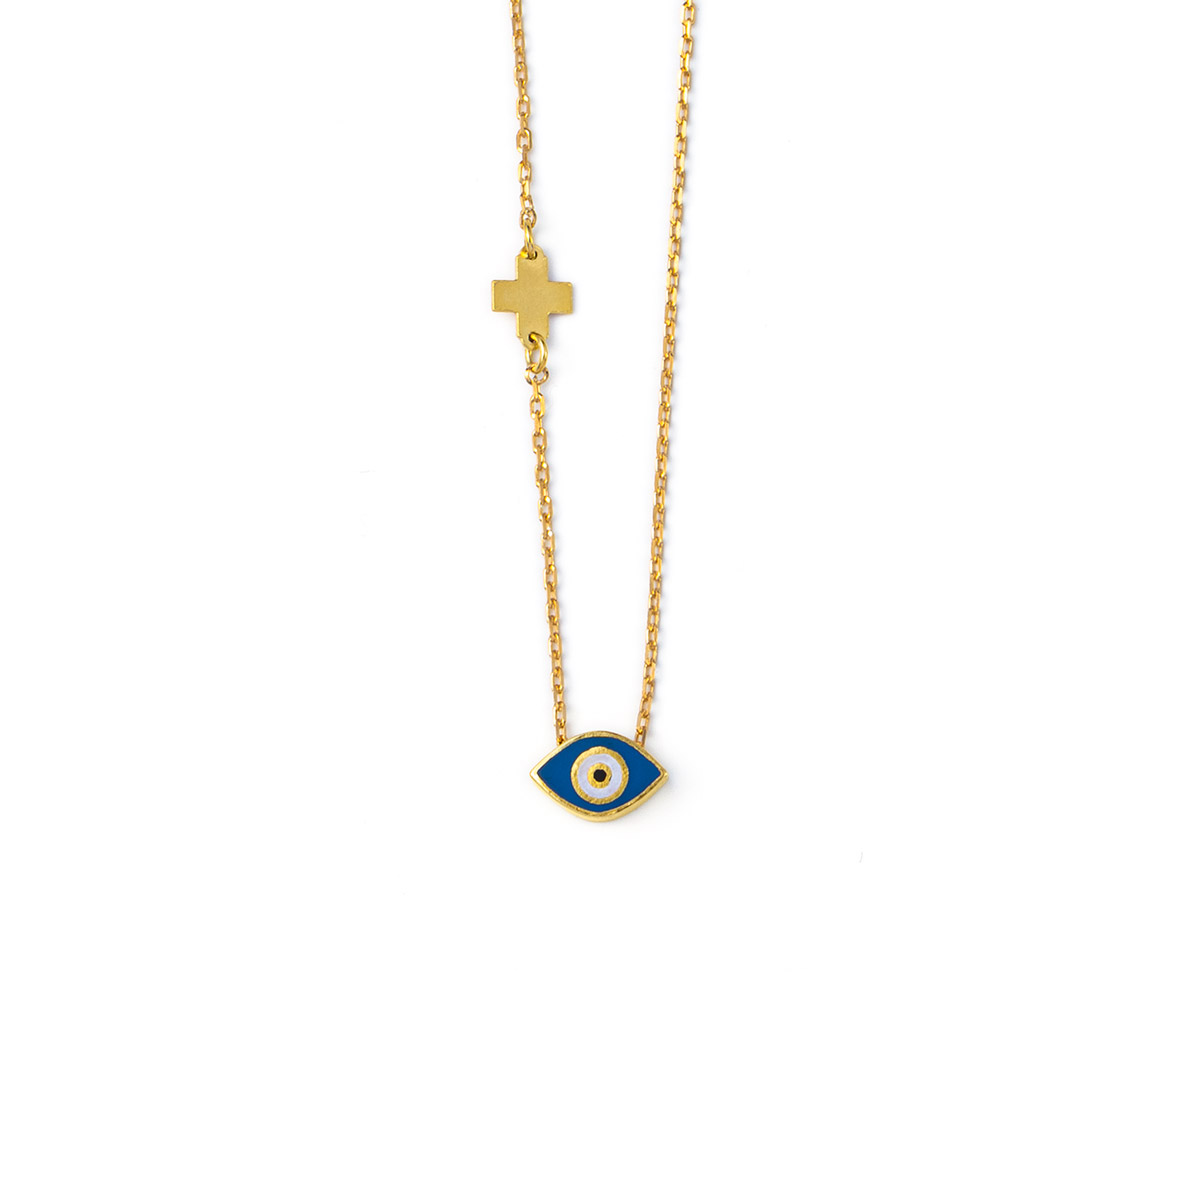 Blue Enamel Evil Eye Necklace with Cross